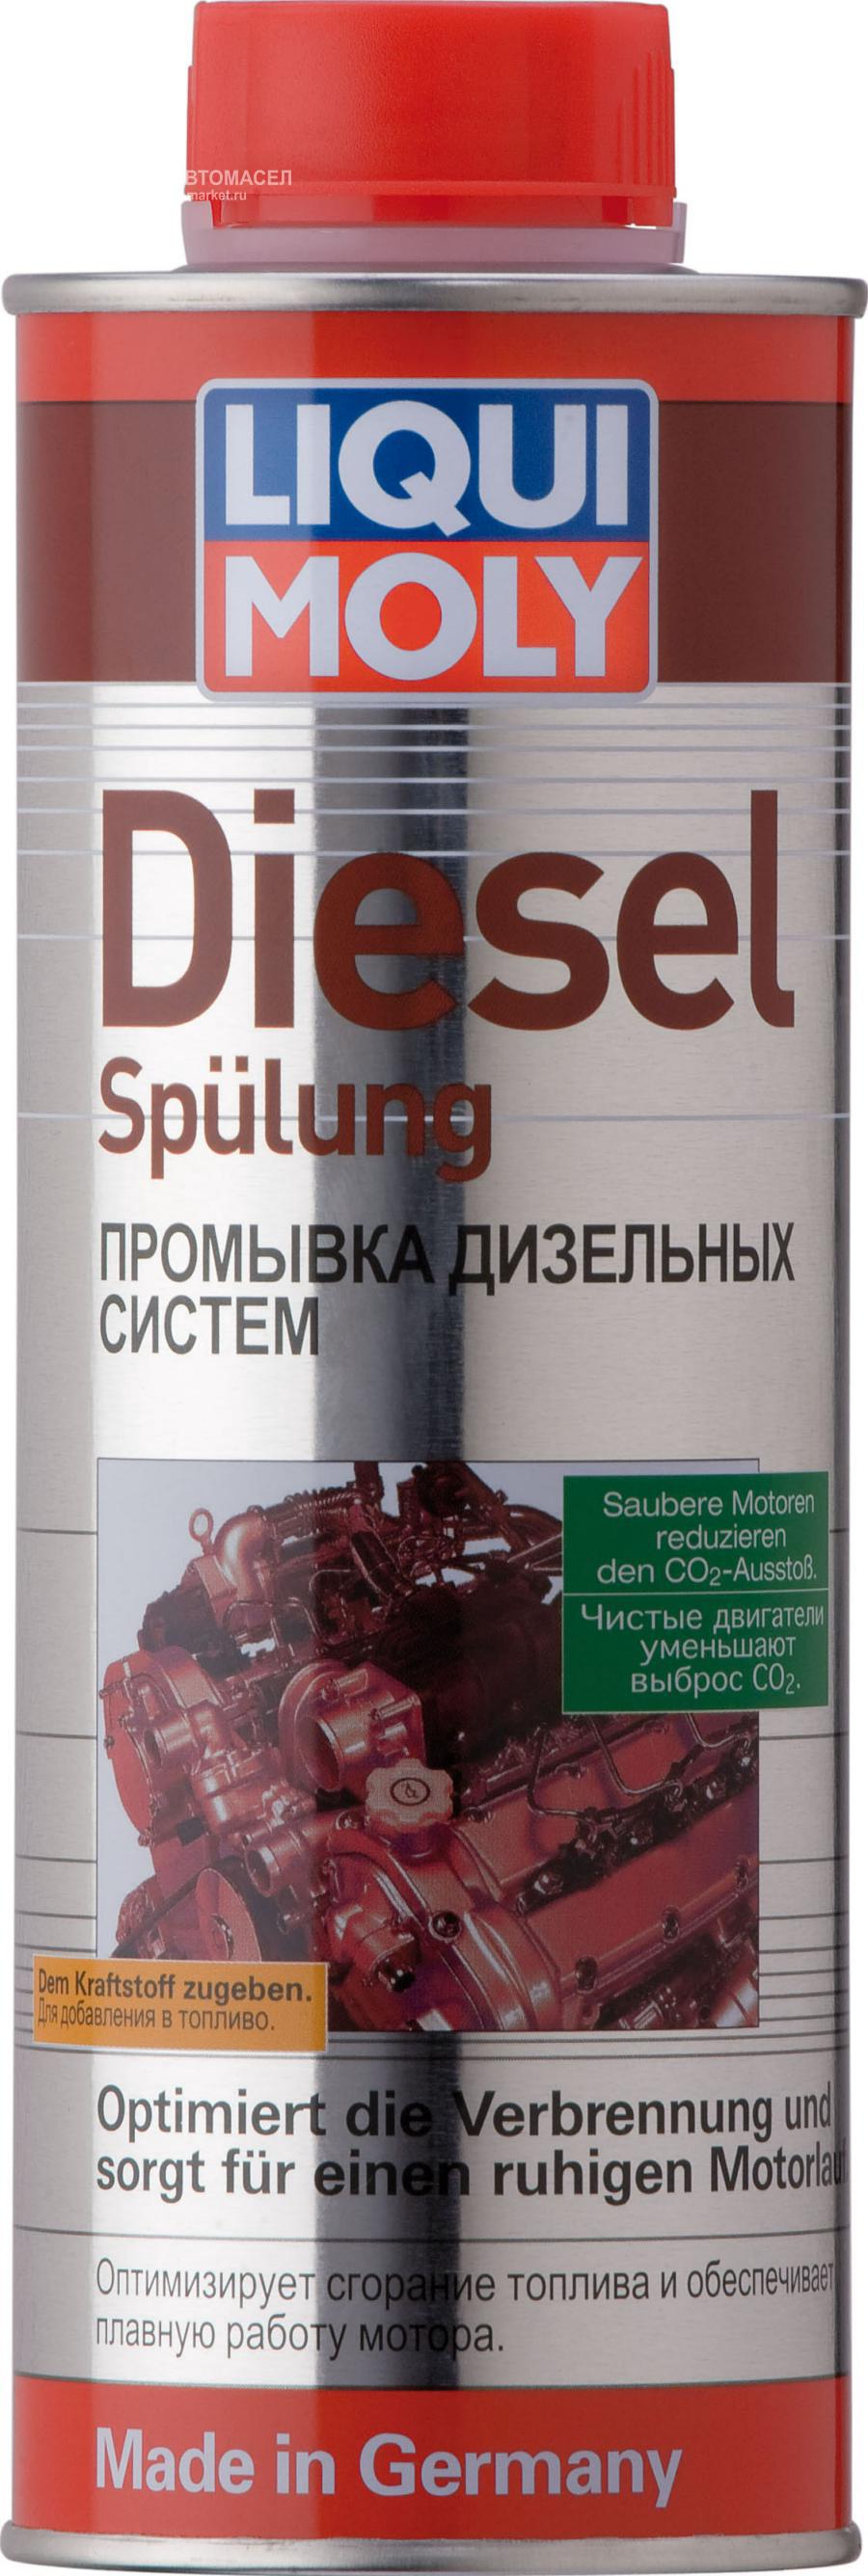 Промывка дизельных систем Diesel Spulung (0,5л)